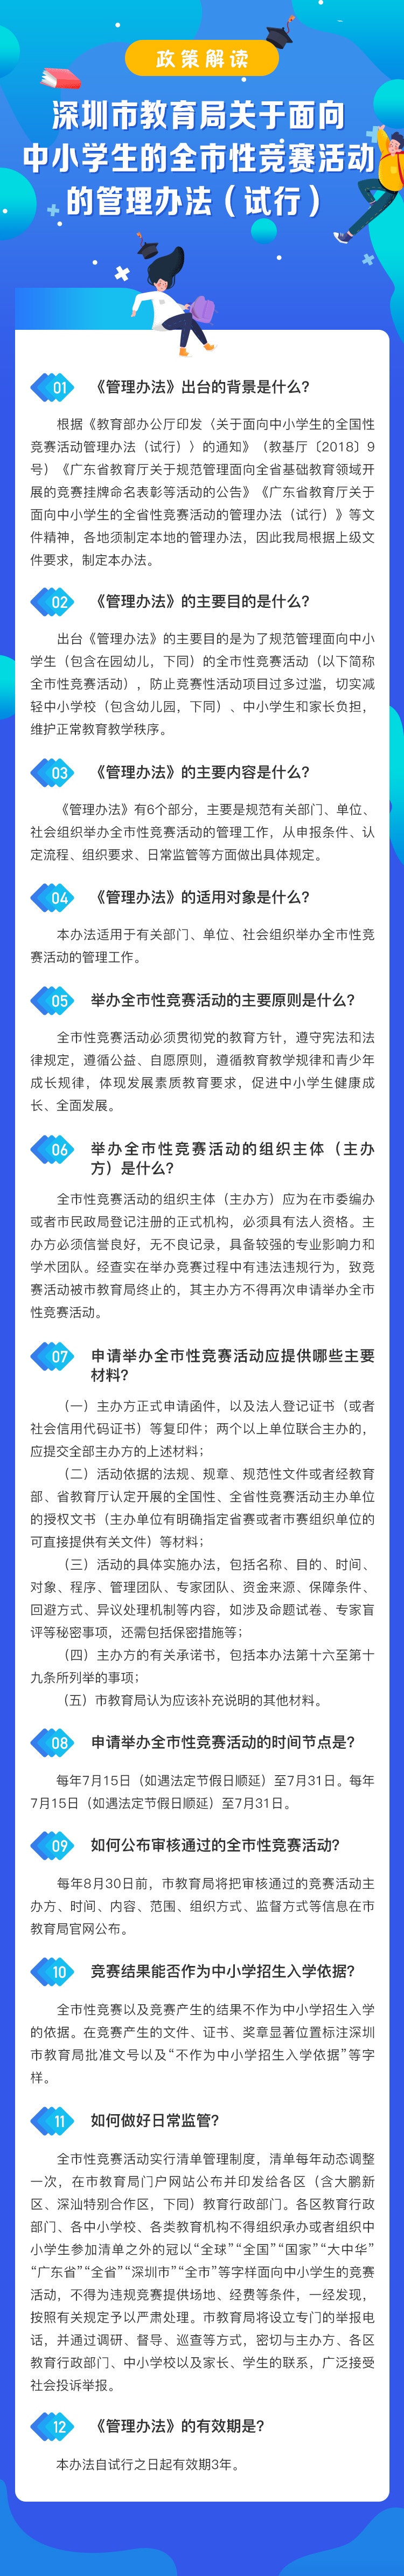 深圳市教育局關于面向中小學生的全市性競賽活動的管理辦法.jpg